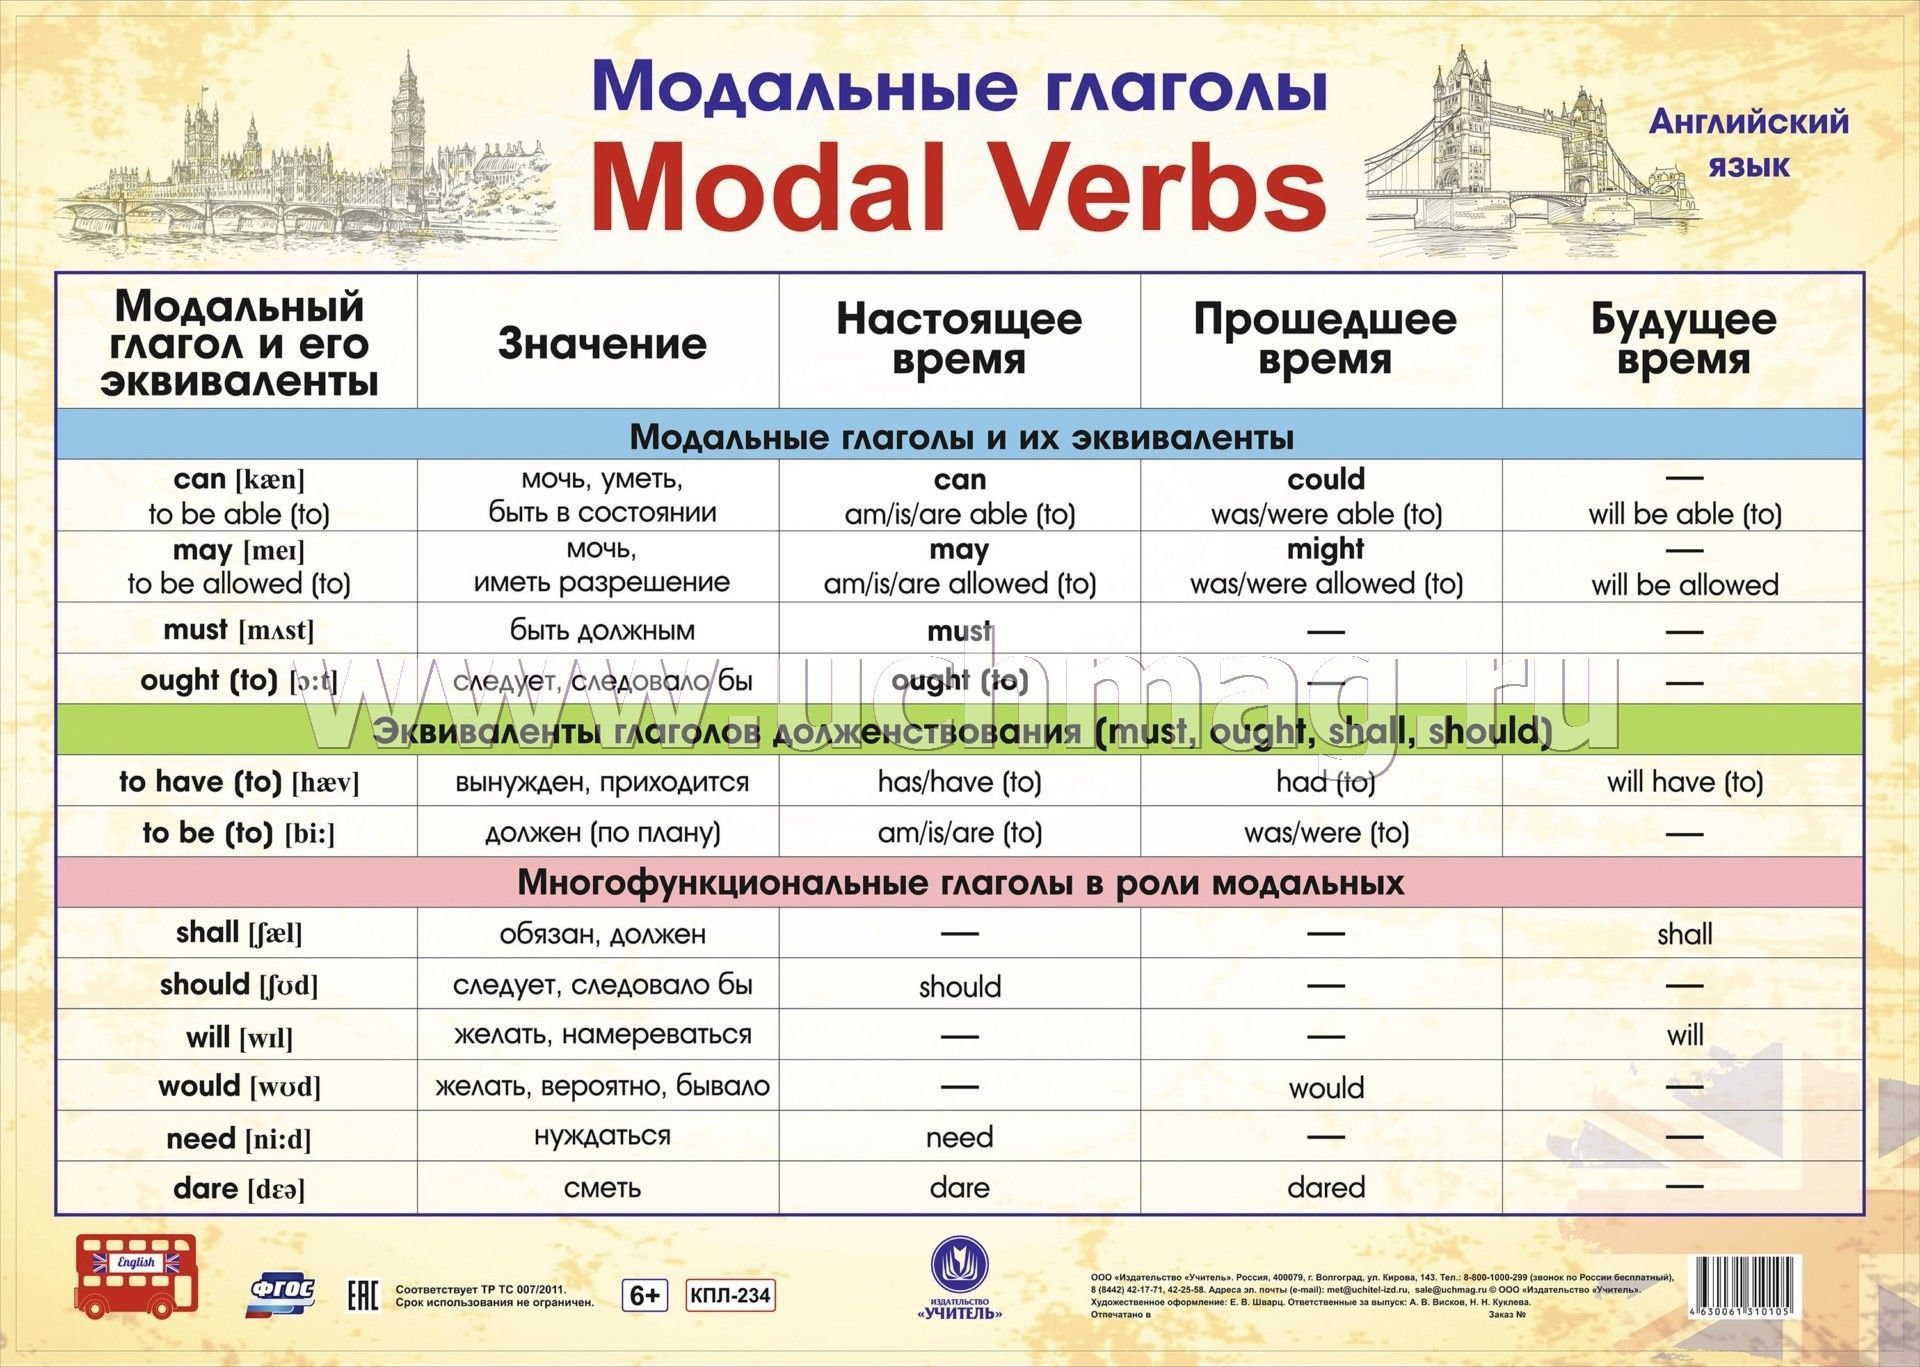 Чувственные глаголы. Модальные глаголы в английском языке таблица. Модальные глаголы англ яз таблица. Модальные гляголы в анг. Можальные гдаголы втанглийсуом языке.